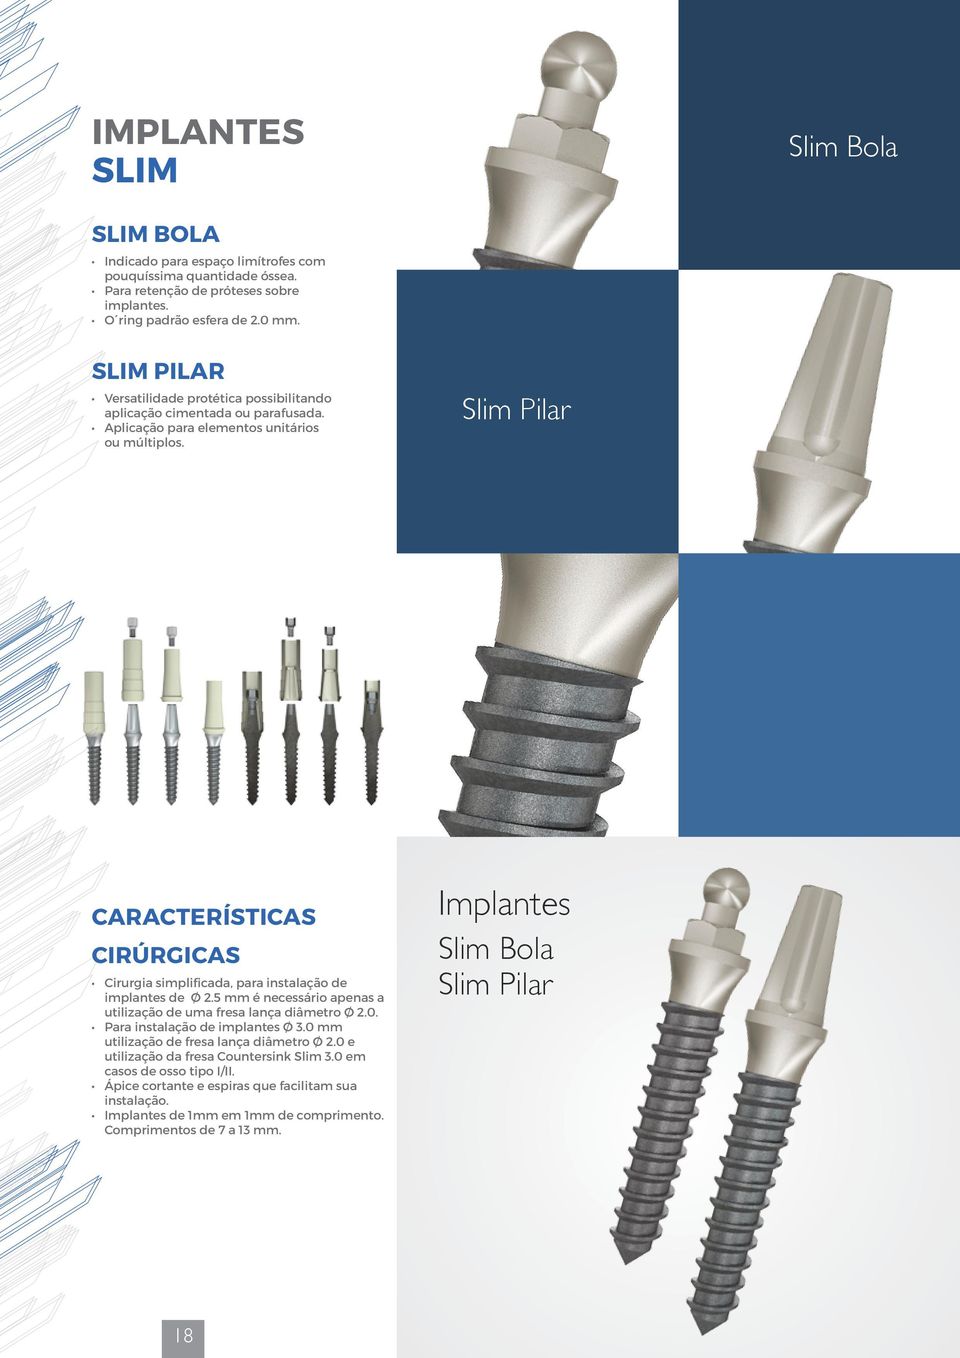 Slim Pilar Características Cirúrgicas Cirurgia simplificada, para instalação de implantes de Ø 2.5 mm é necessário apenas a utilização de uma fresa lança diâmetro Ø 2.0.